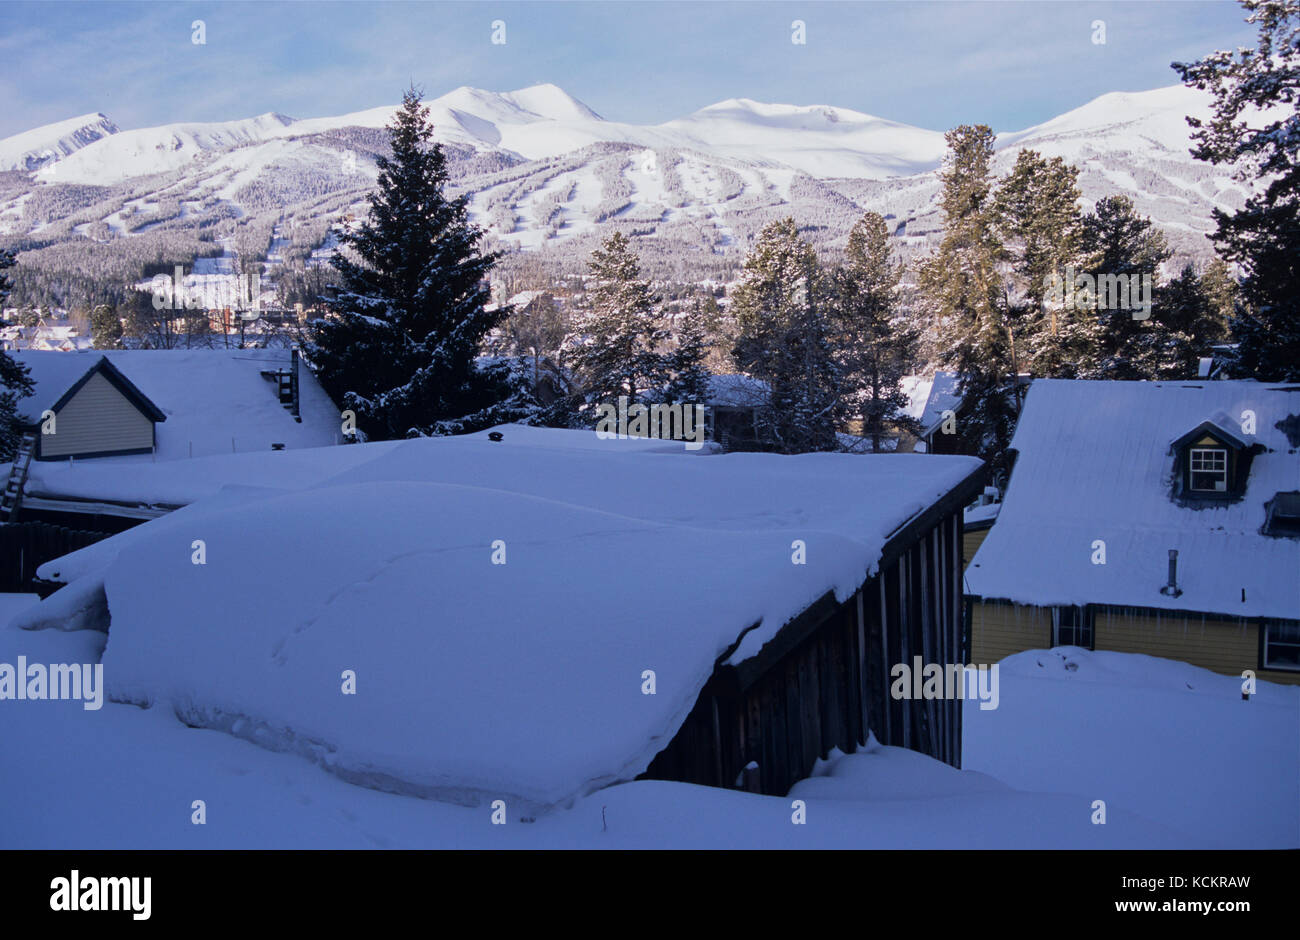 Città di Breckenridge, una stazione sciistica in inverno, altitudine 2926 m con picchi nelle vicinanze oltre 4200 m, una delle regioni più alte degli Stati Uniti. Mattina presto Foto Stock